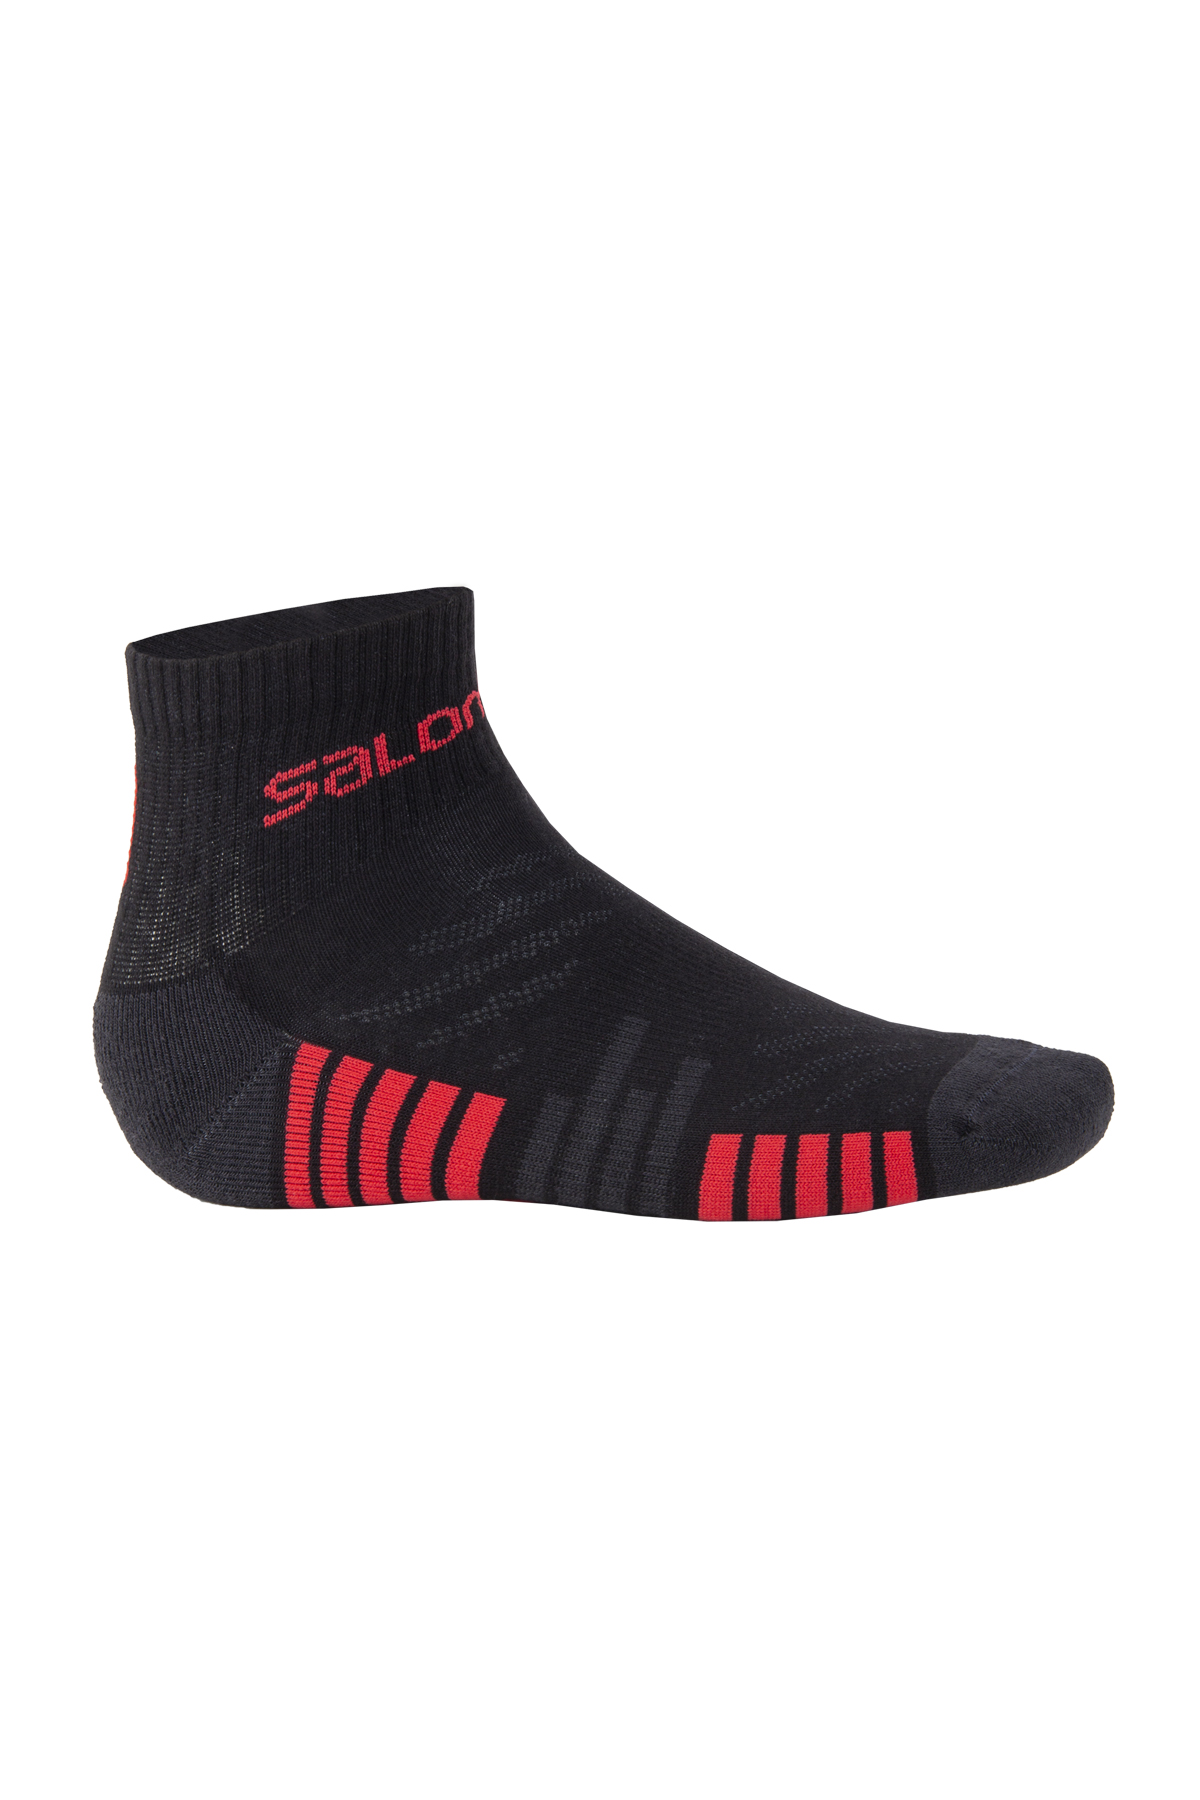 Salomon L16022 - Active 2P Outdoor  Siyah-Kırmızı Çorap